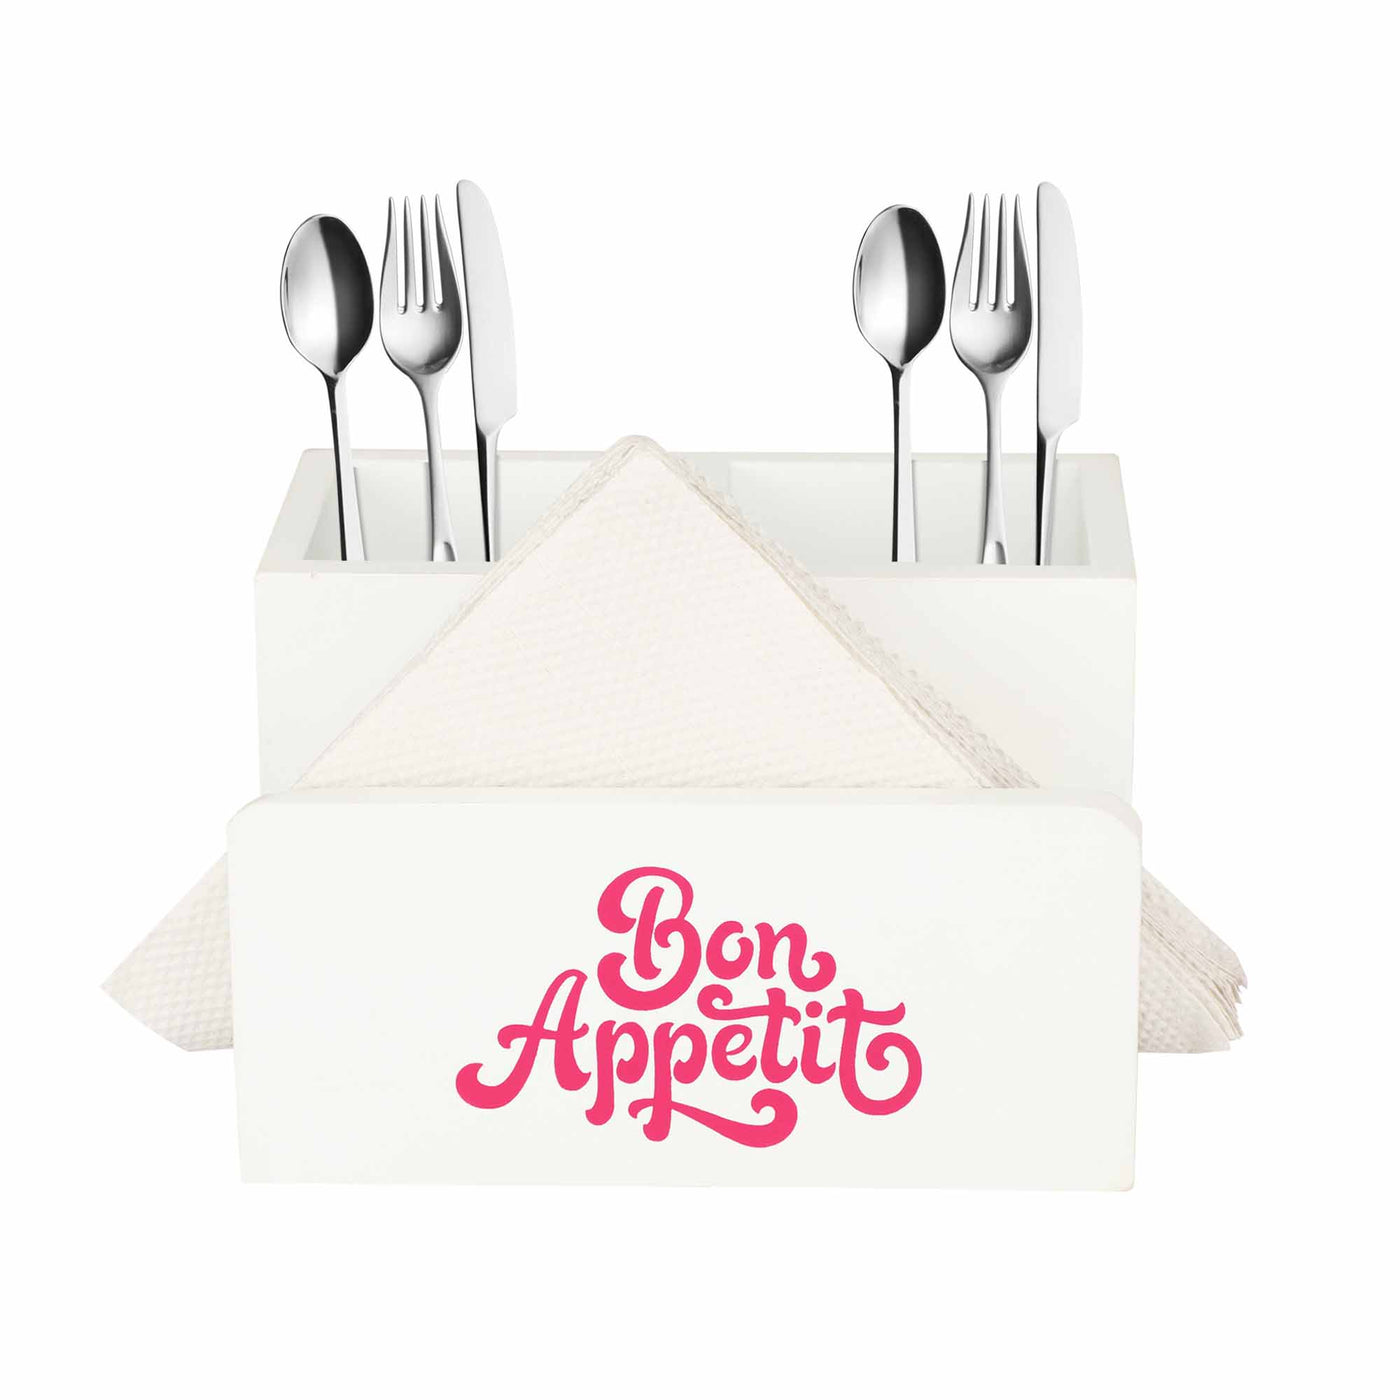 Ek Do Dhai Bon Appetit Cutlery And Tissue White Holder - Dining & Kitchen - 2